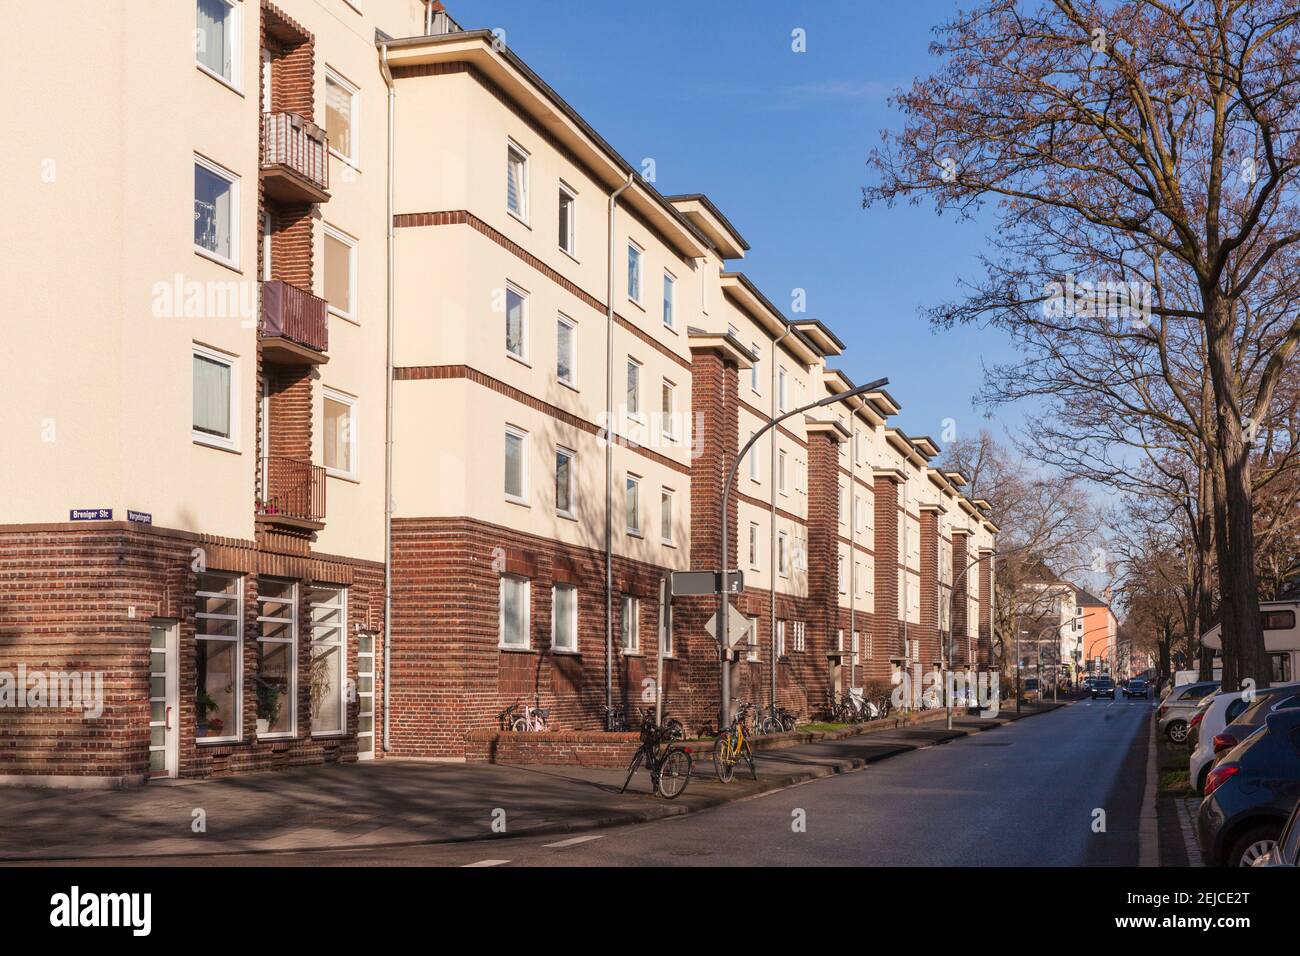 Edificios residenciales de la cooperativa de vivienda Koeln-sued, por ejemplo, en Vorgebirgsstrasse, en el distrito de Zollstock, Colonia, Alemania. Wohngebaeude der Woh Foto de stock